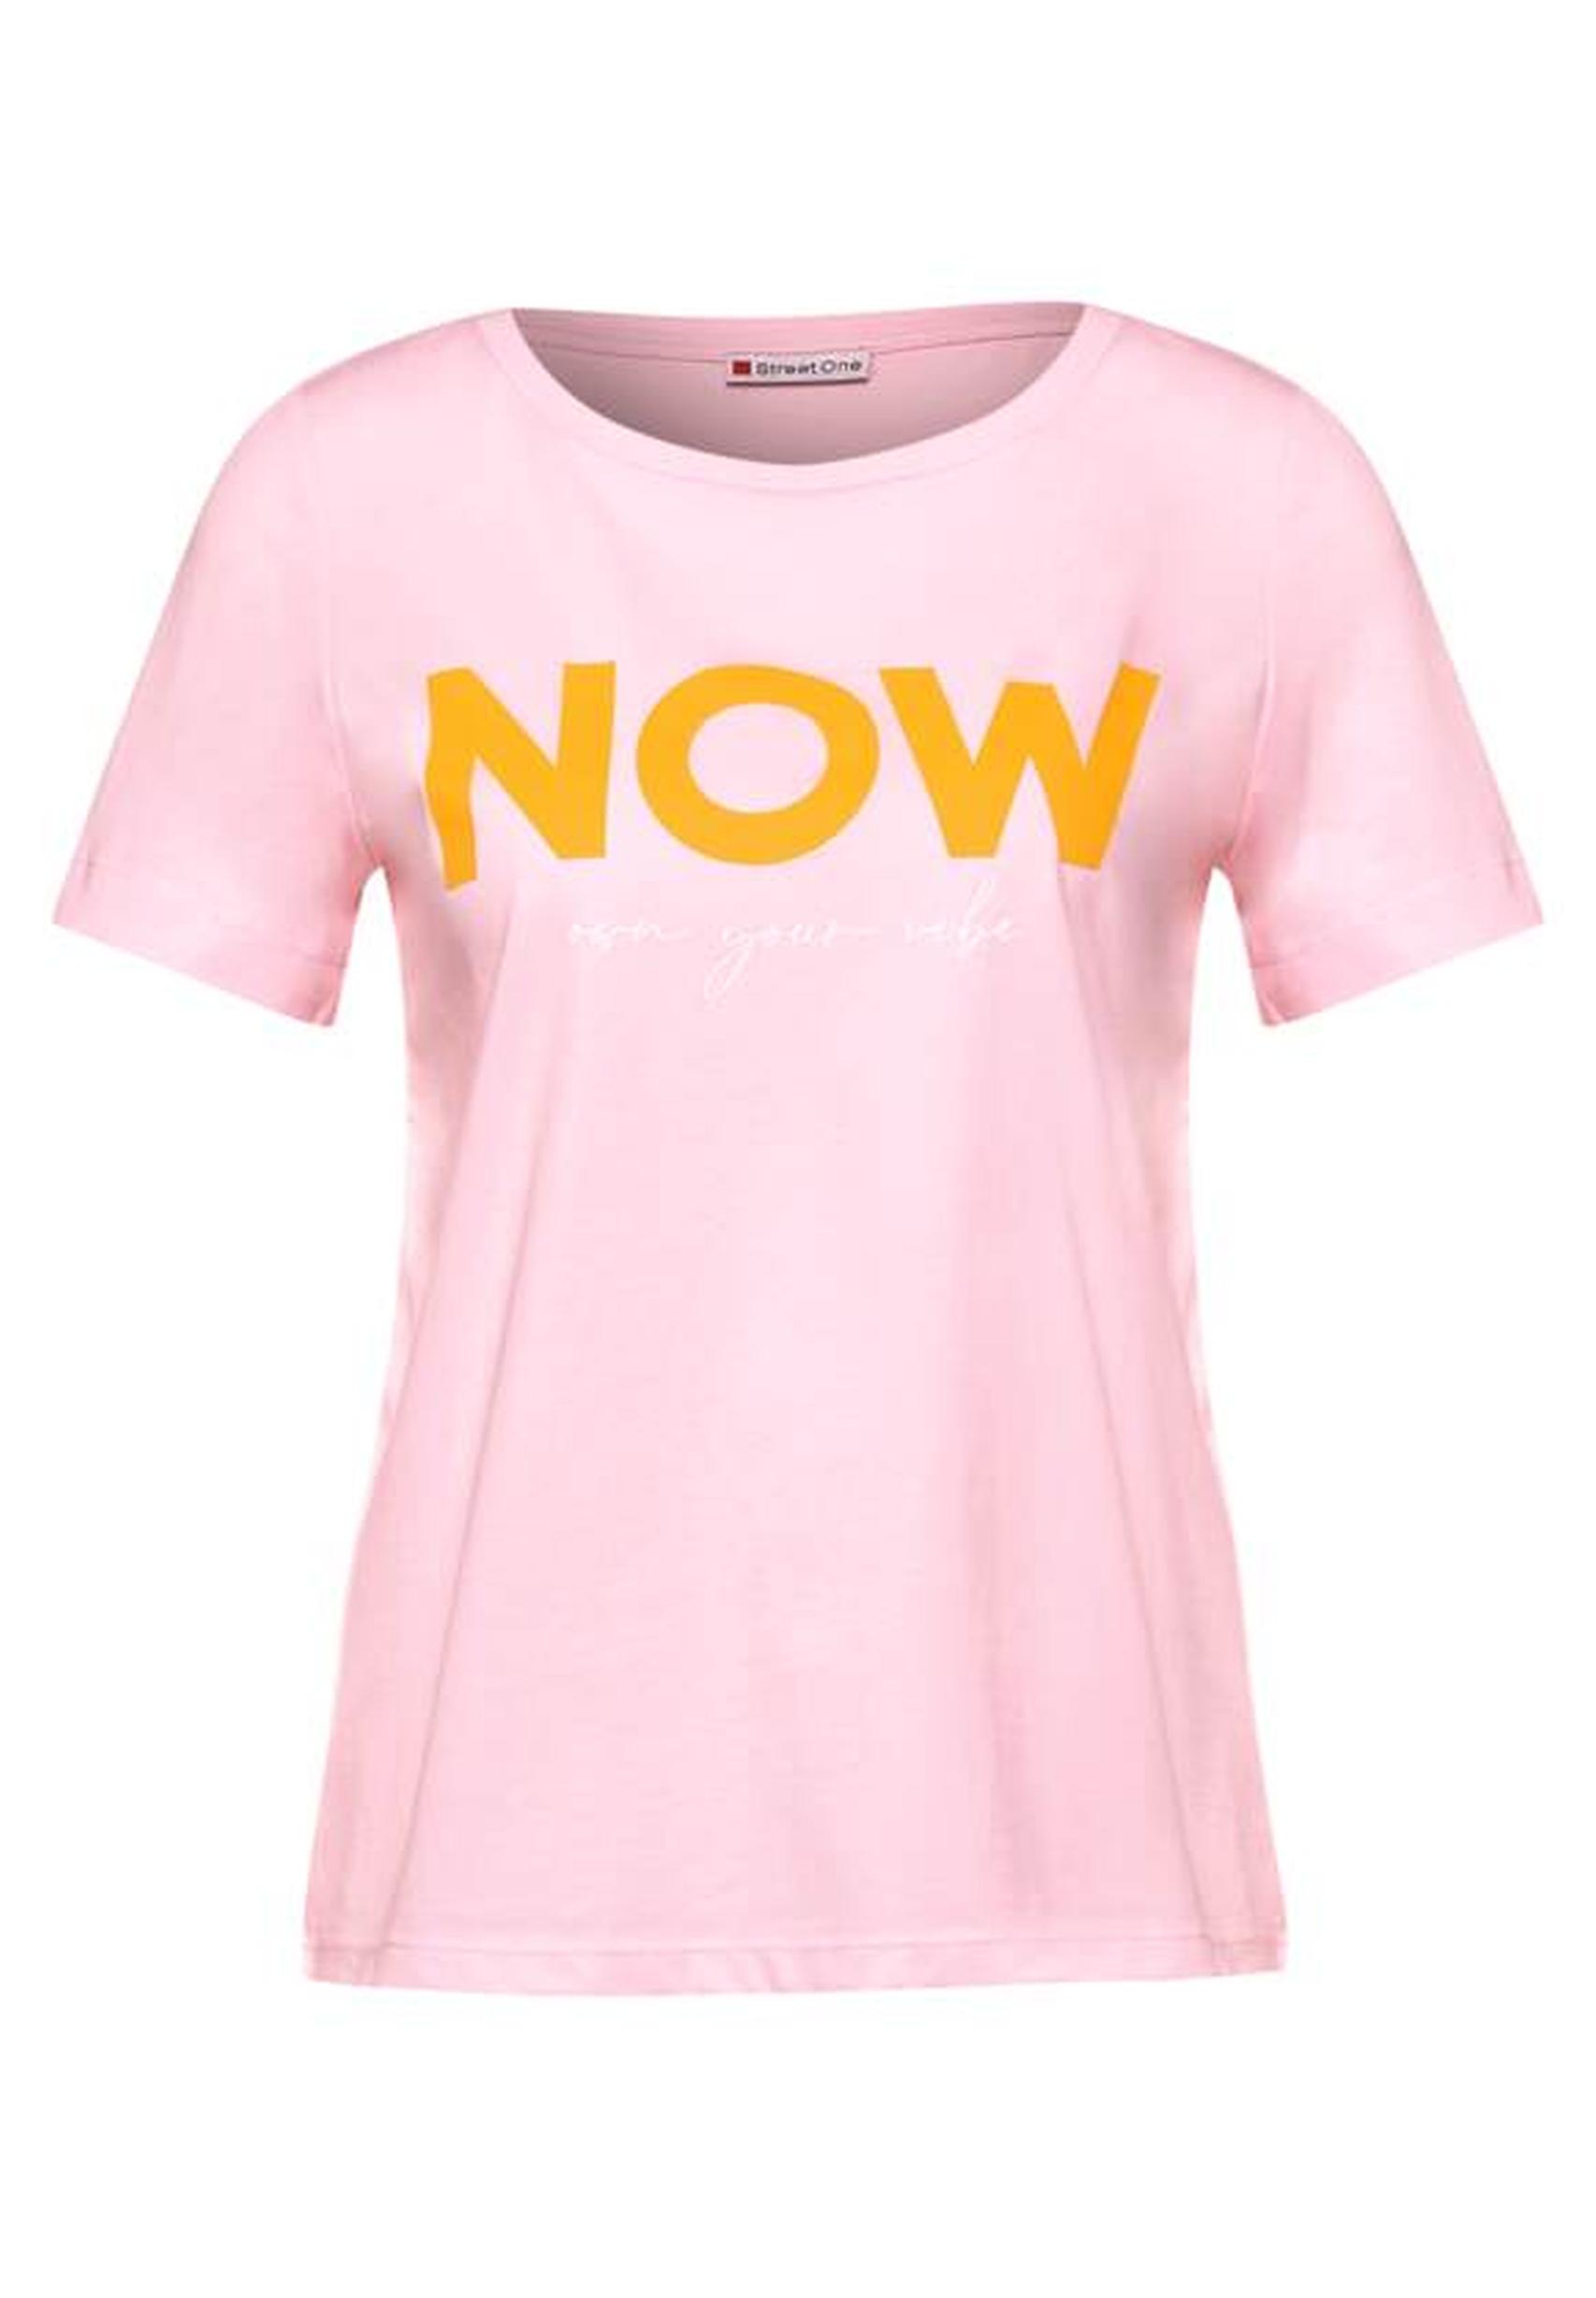 Trendiges T-Shirt aus der Kollektion - rose in von 317605 Street icy One